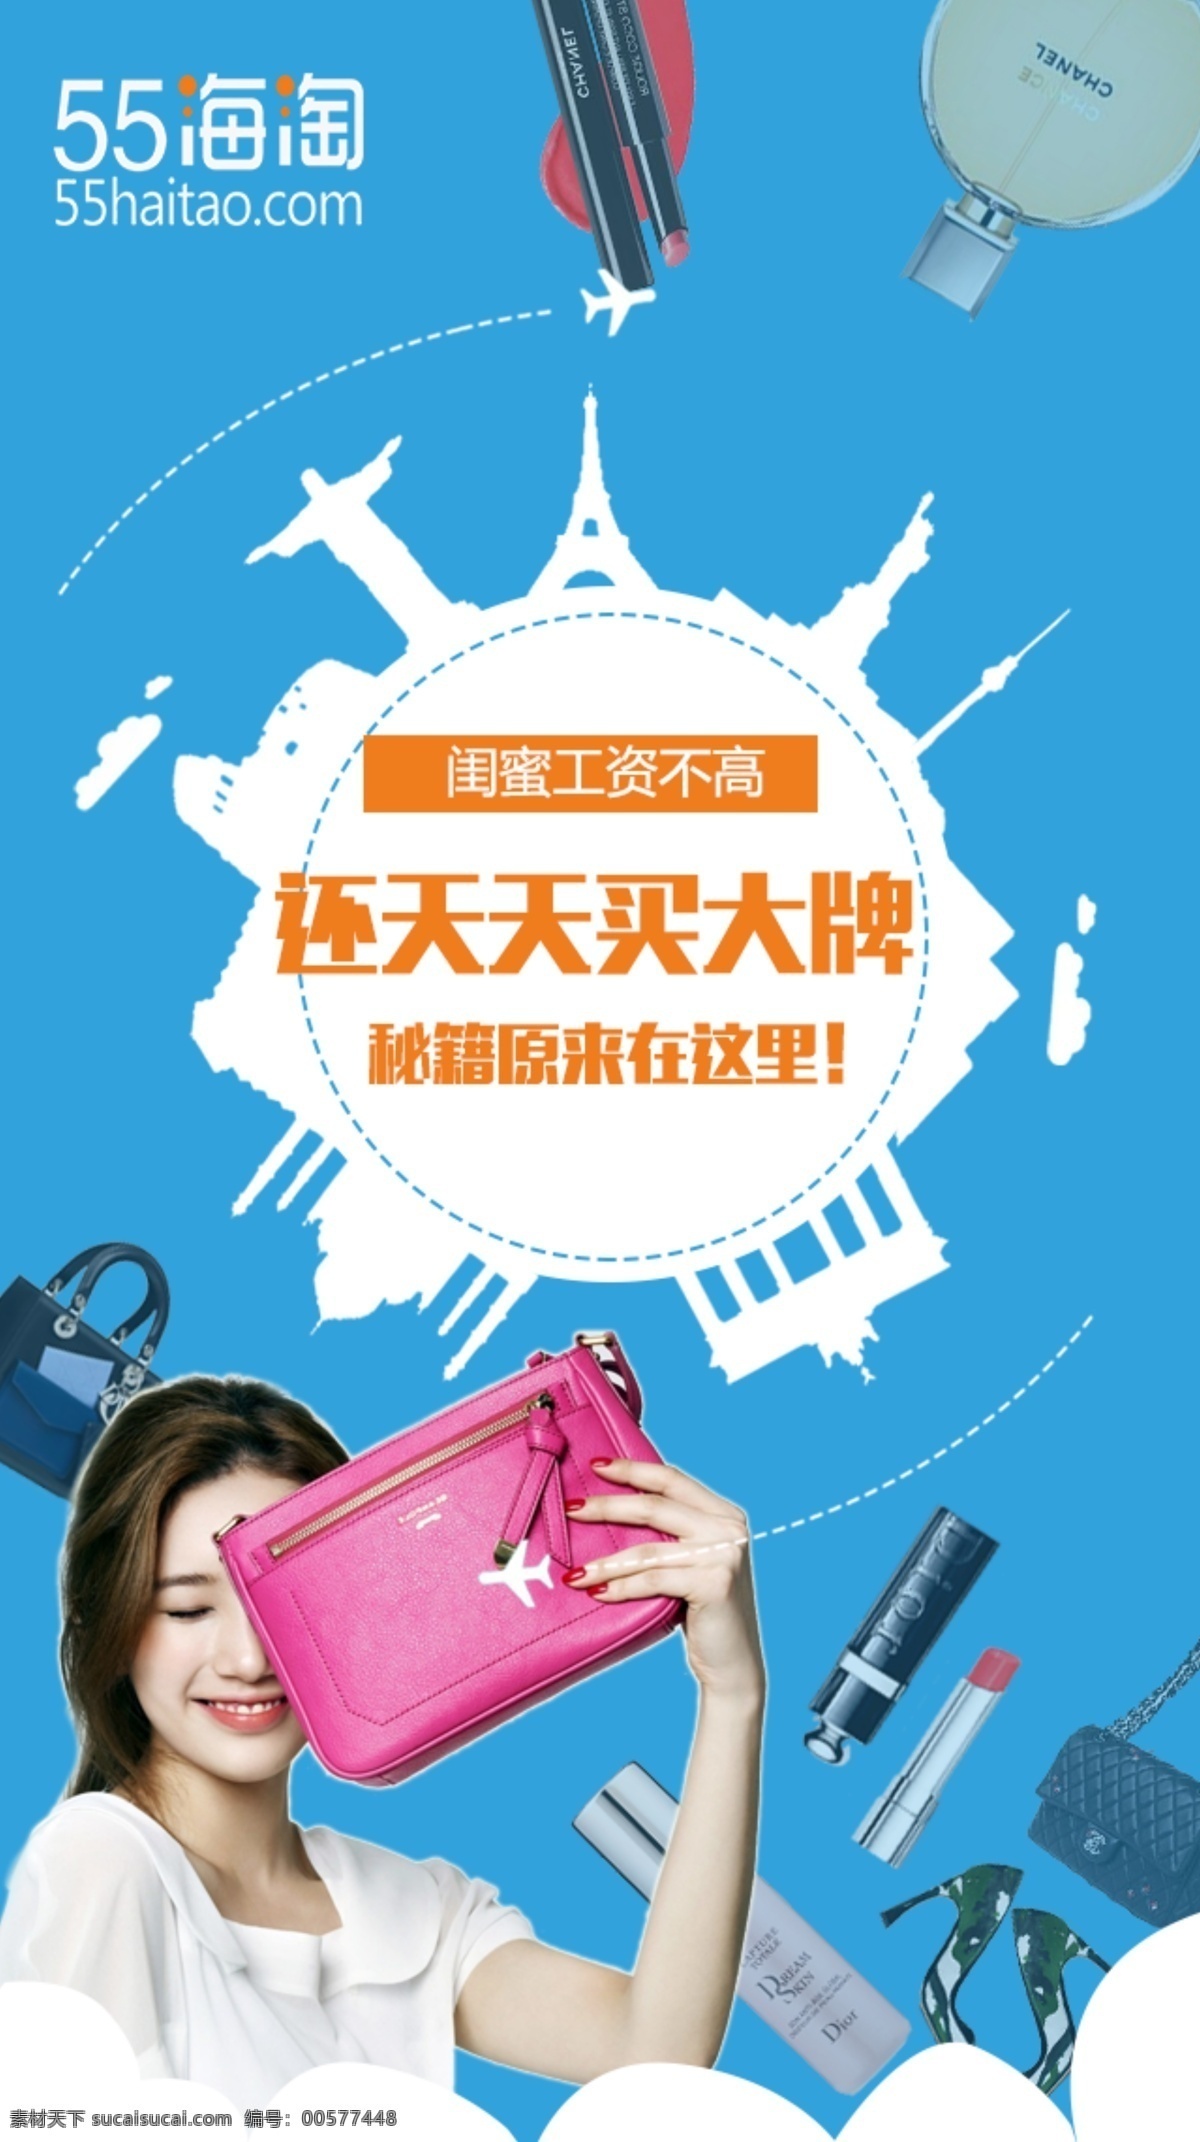 海外 购物 宣传海报 海外购物 拿着包的美女 蓝色背景 创意 国家 建筑 背景 banner